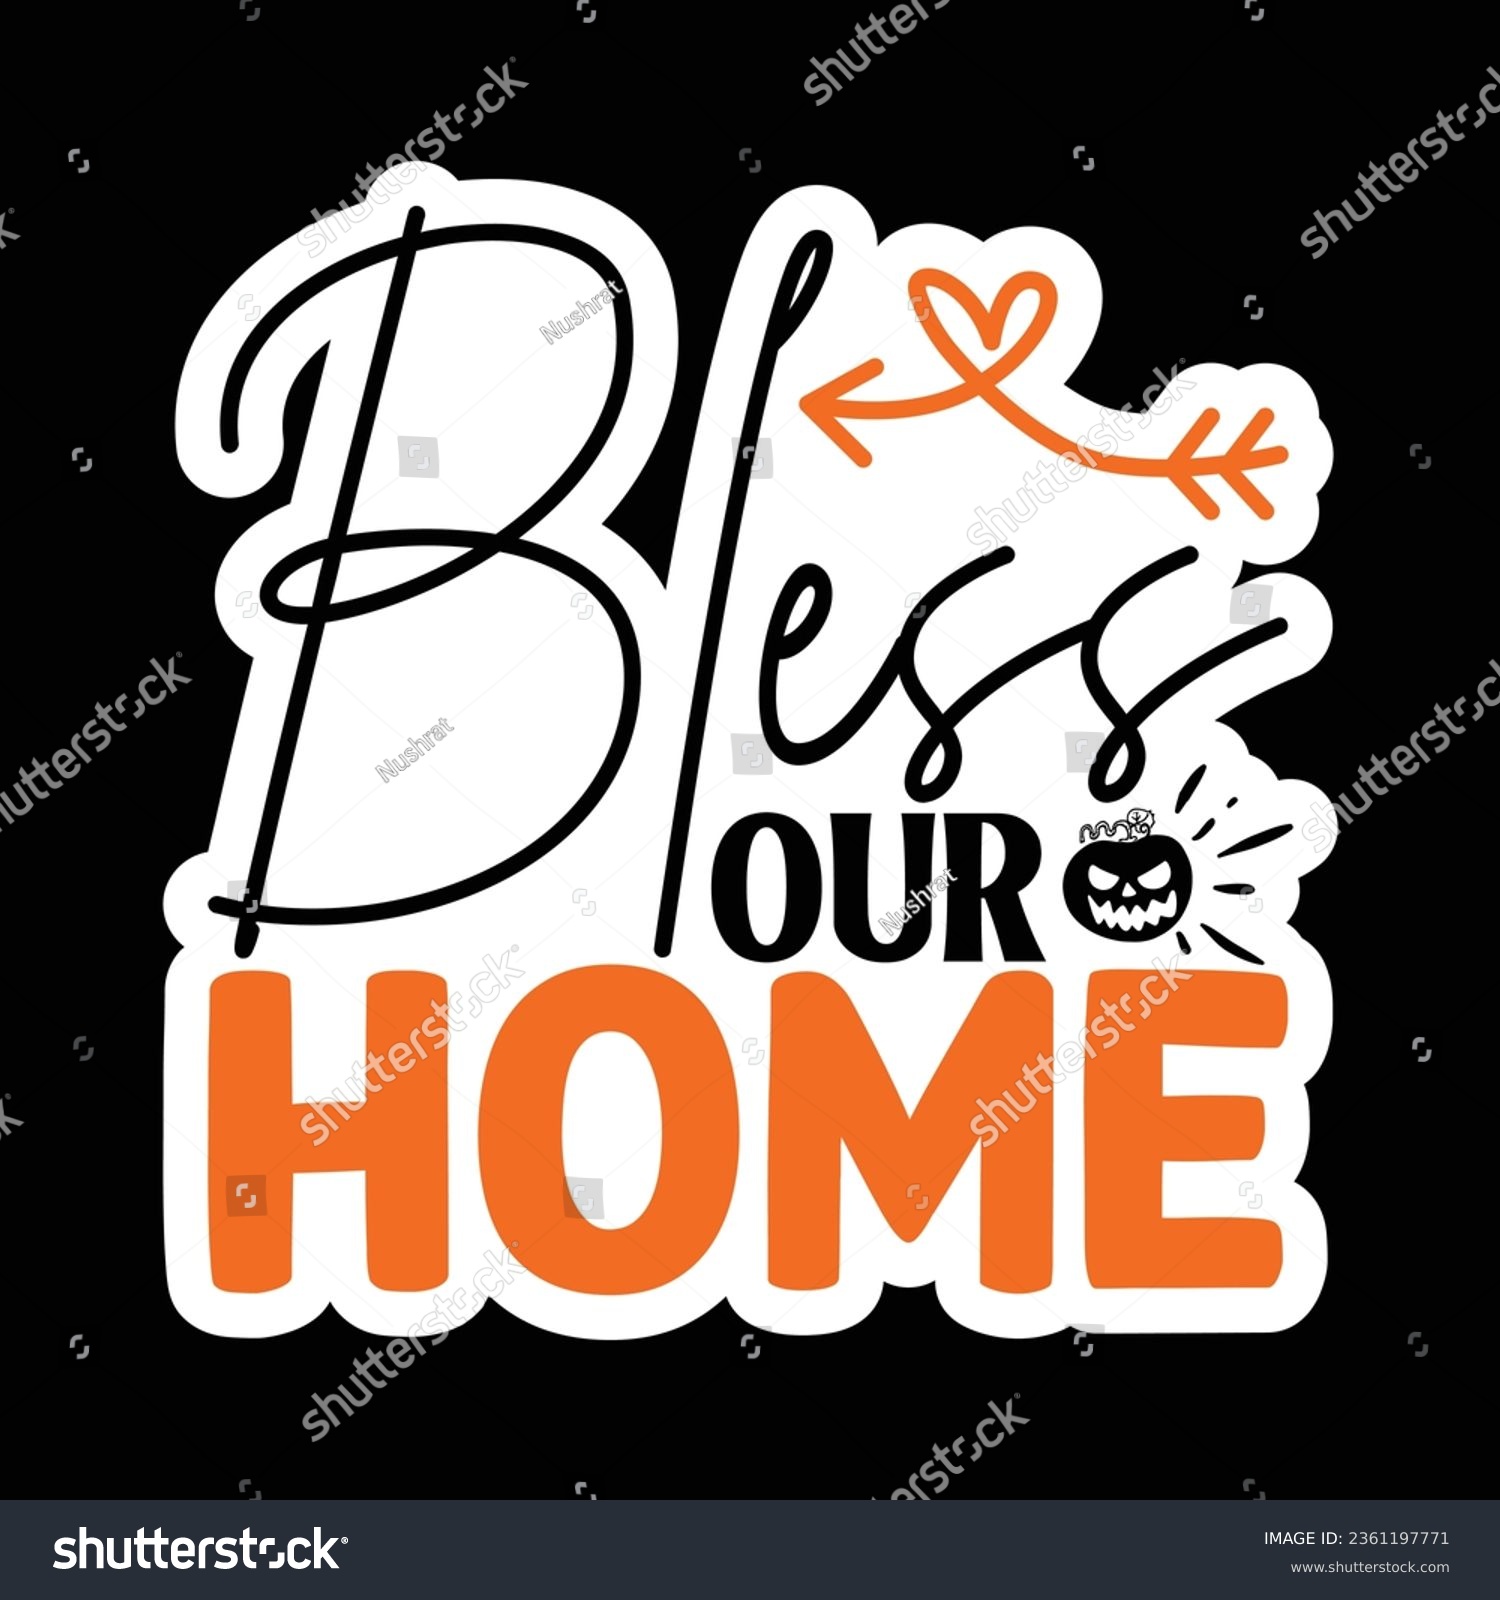 SVG of BLESS OUR HOME, Sticker SVG Design Vector file. svg